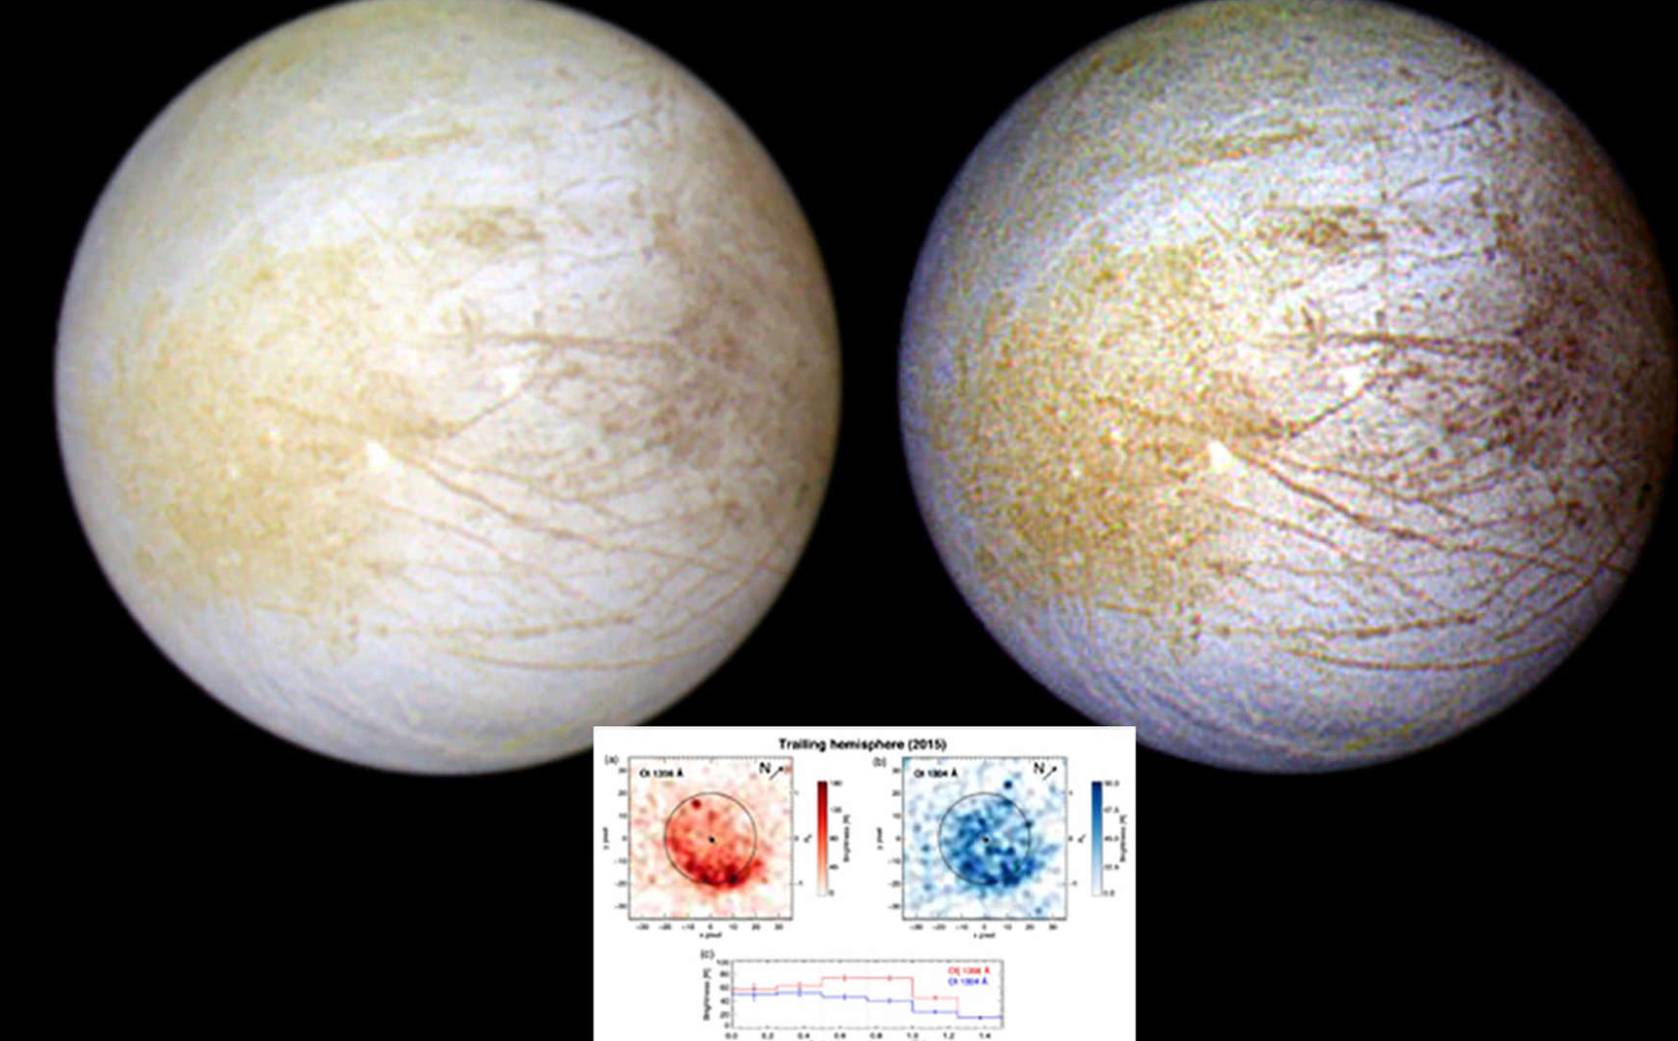 Hubble Uzay Teleskobu, Europa uydusunda su buharı tespit etti.